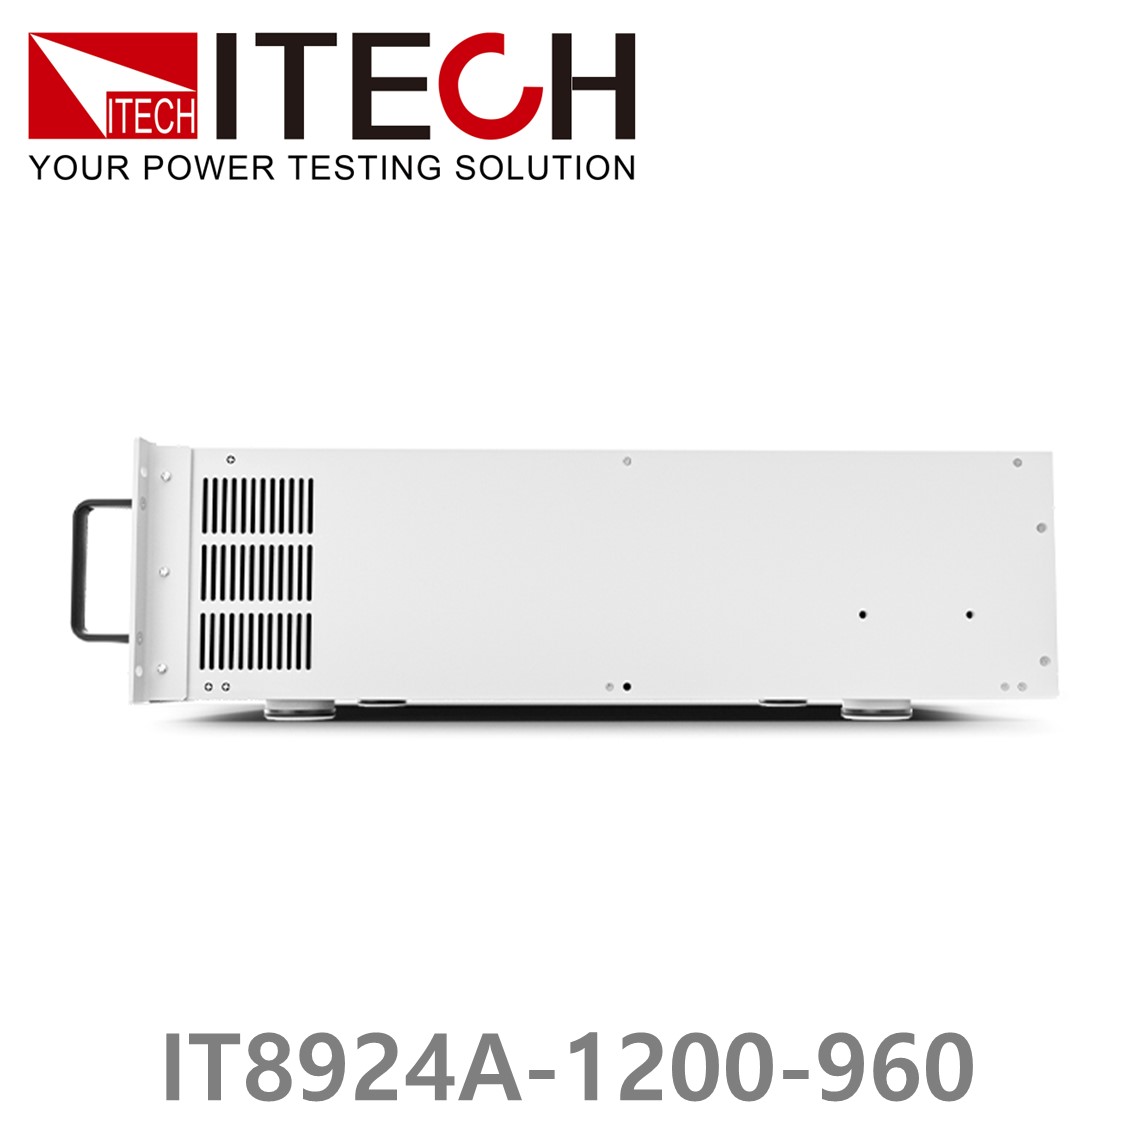 [ ITECH ] IT8924A-1200-960  고성능 고전력 DC 전자로드 1200V/960A/24kW (27U)